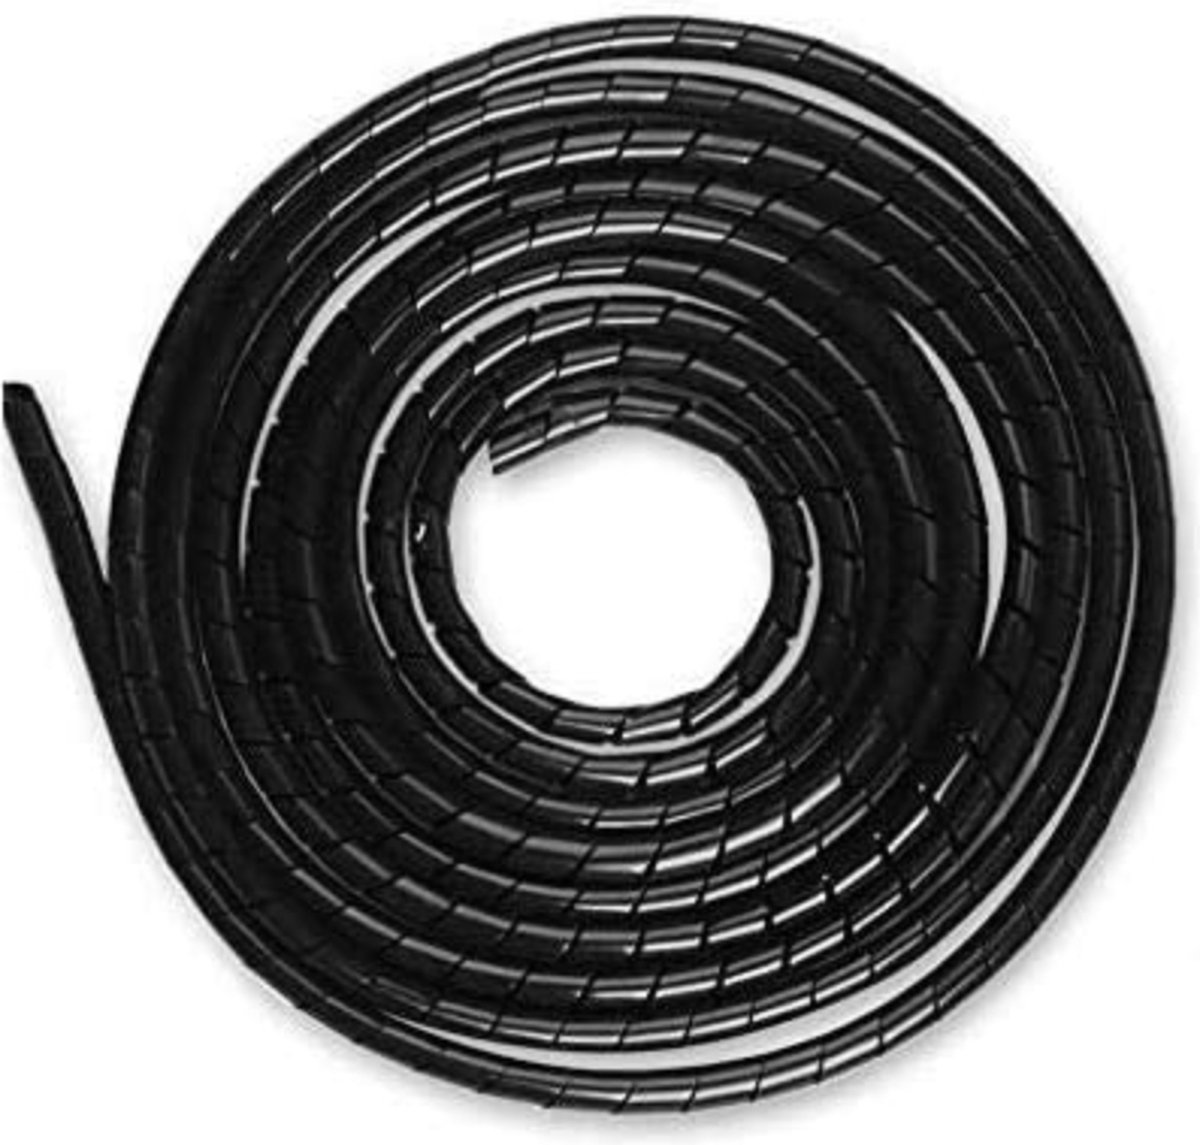 LAUWG - Kabelslang 4-50 mm (6 m), 6-60 mm (4 m), organizer kabelgoot bescherming kabelafdekking, totaal 10 m, zwart